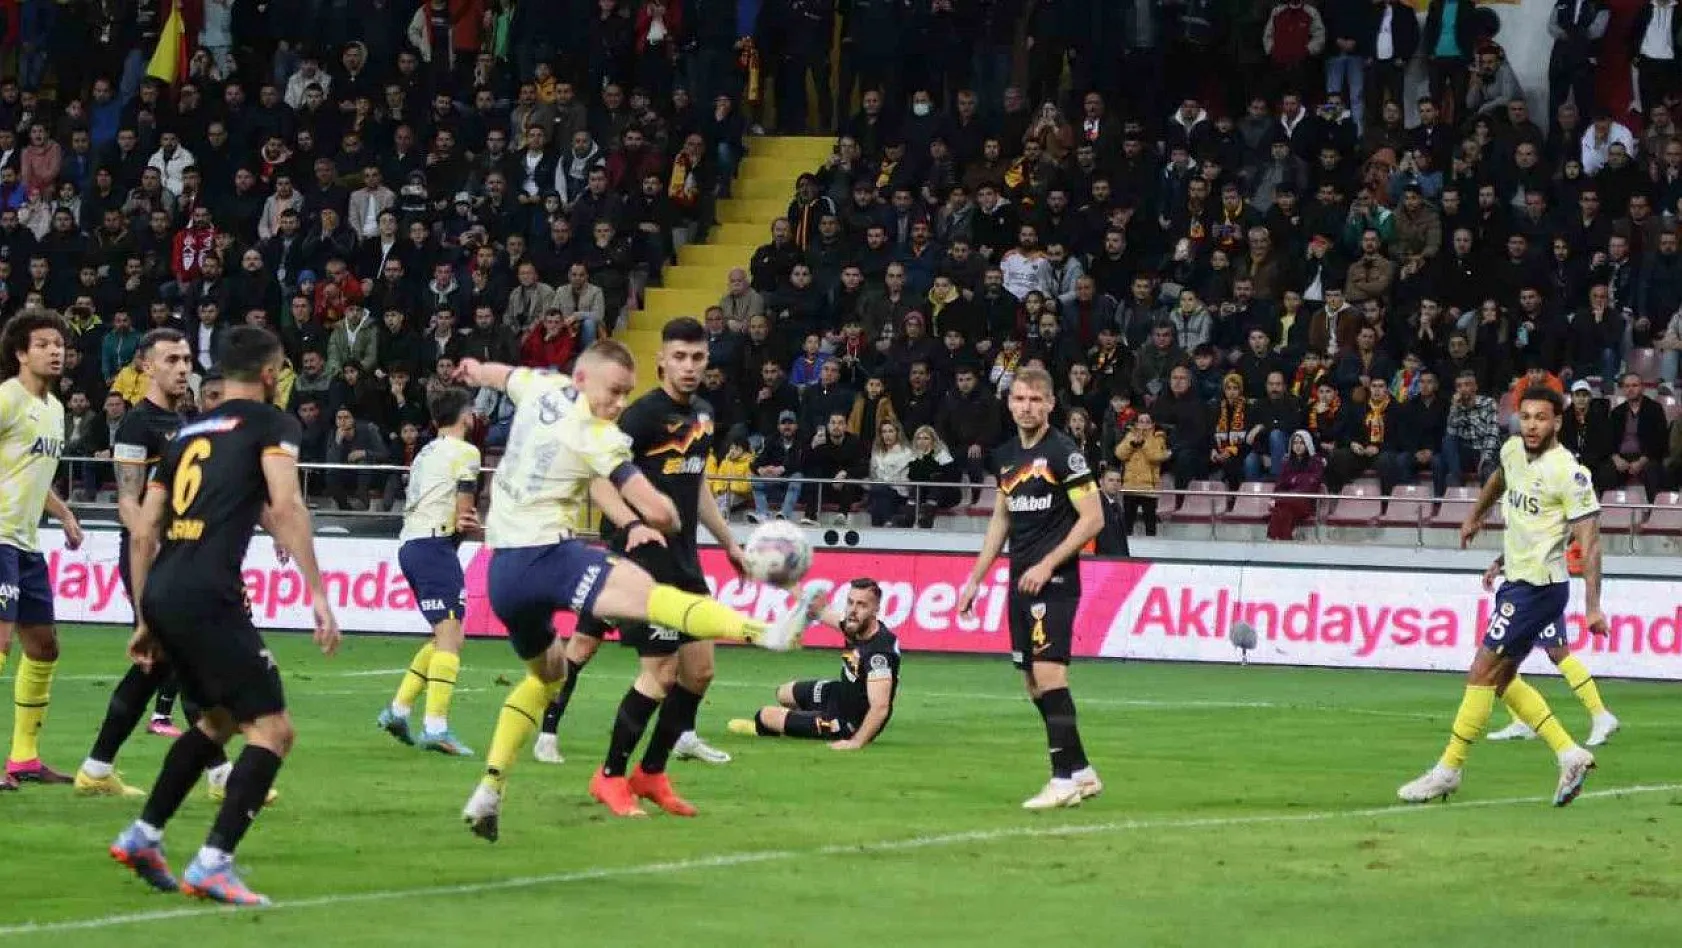 Spor Toto Süper Lig: Kayserispor: 0 - Fenerbahçe: 1 (İlk yarı)